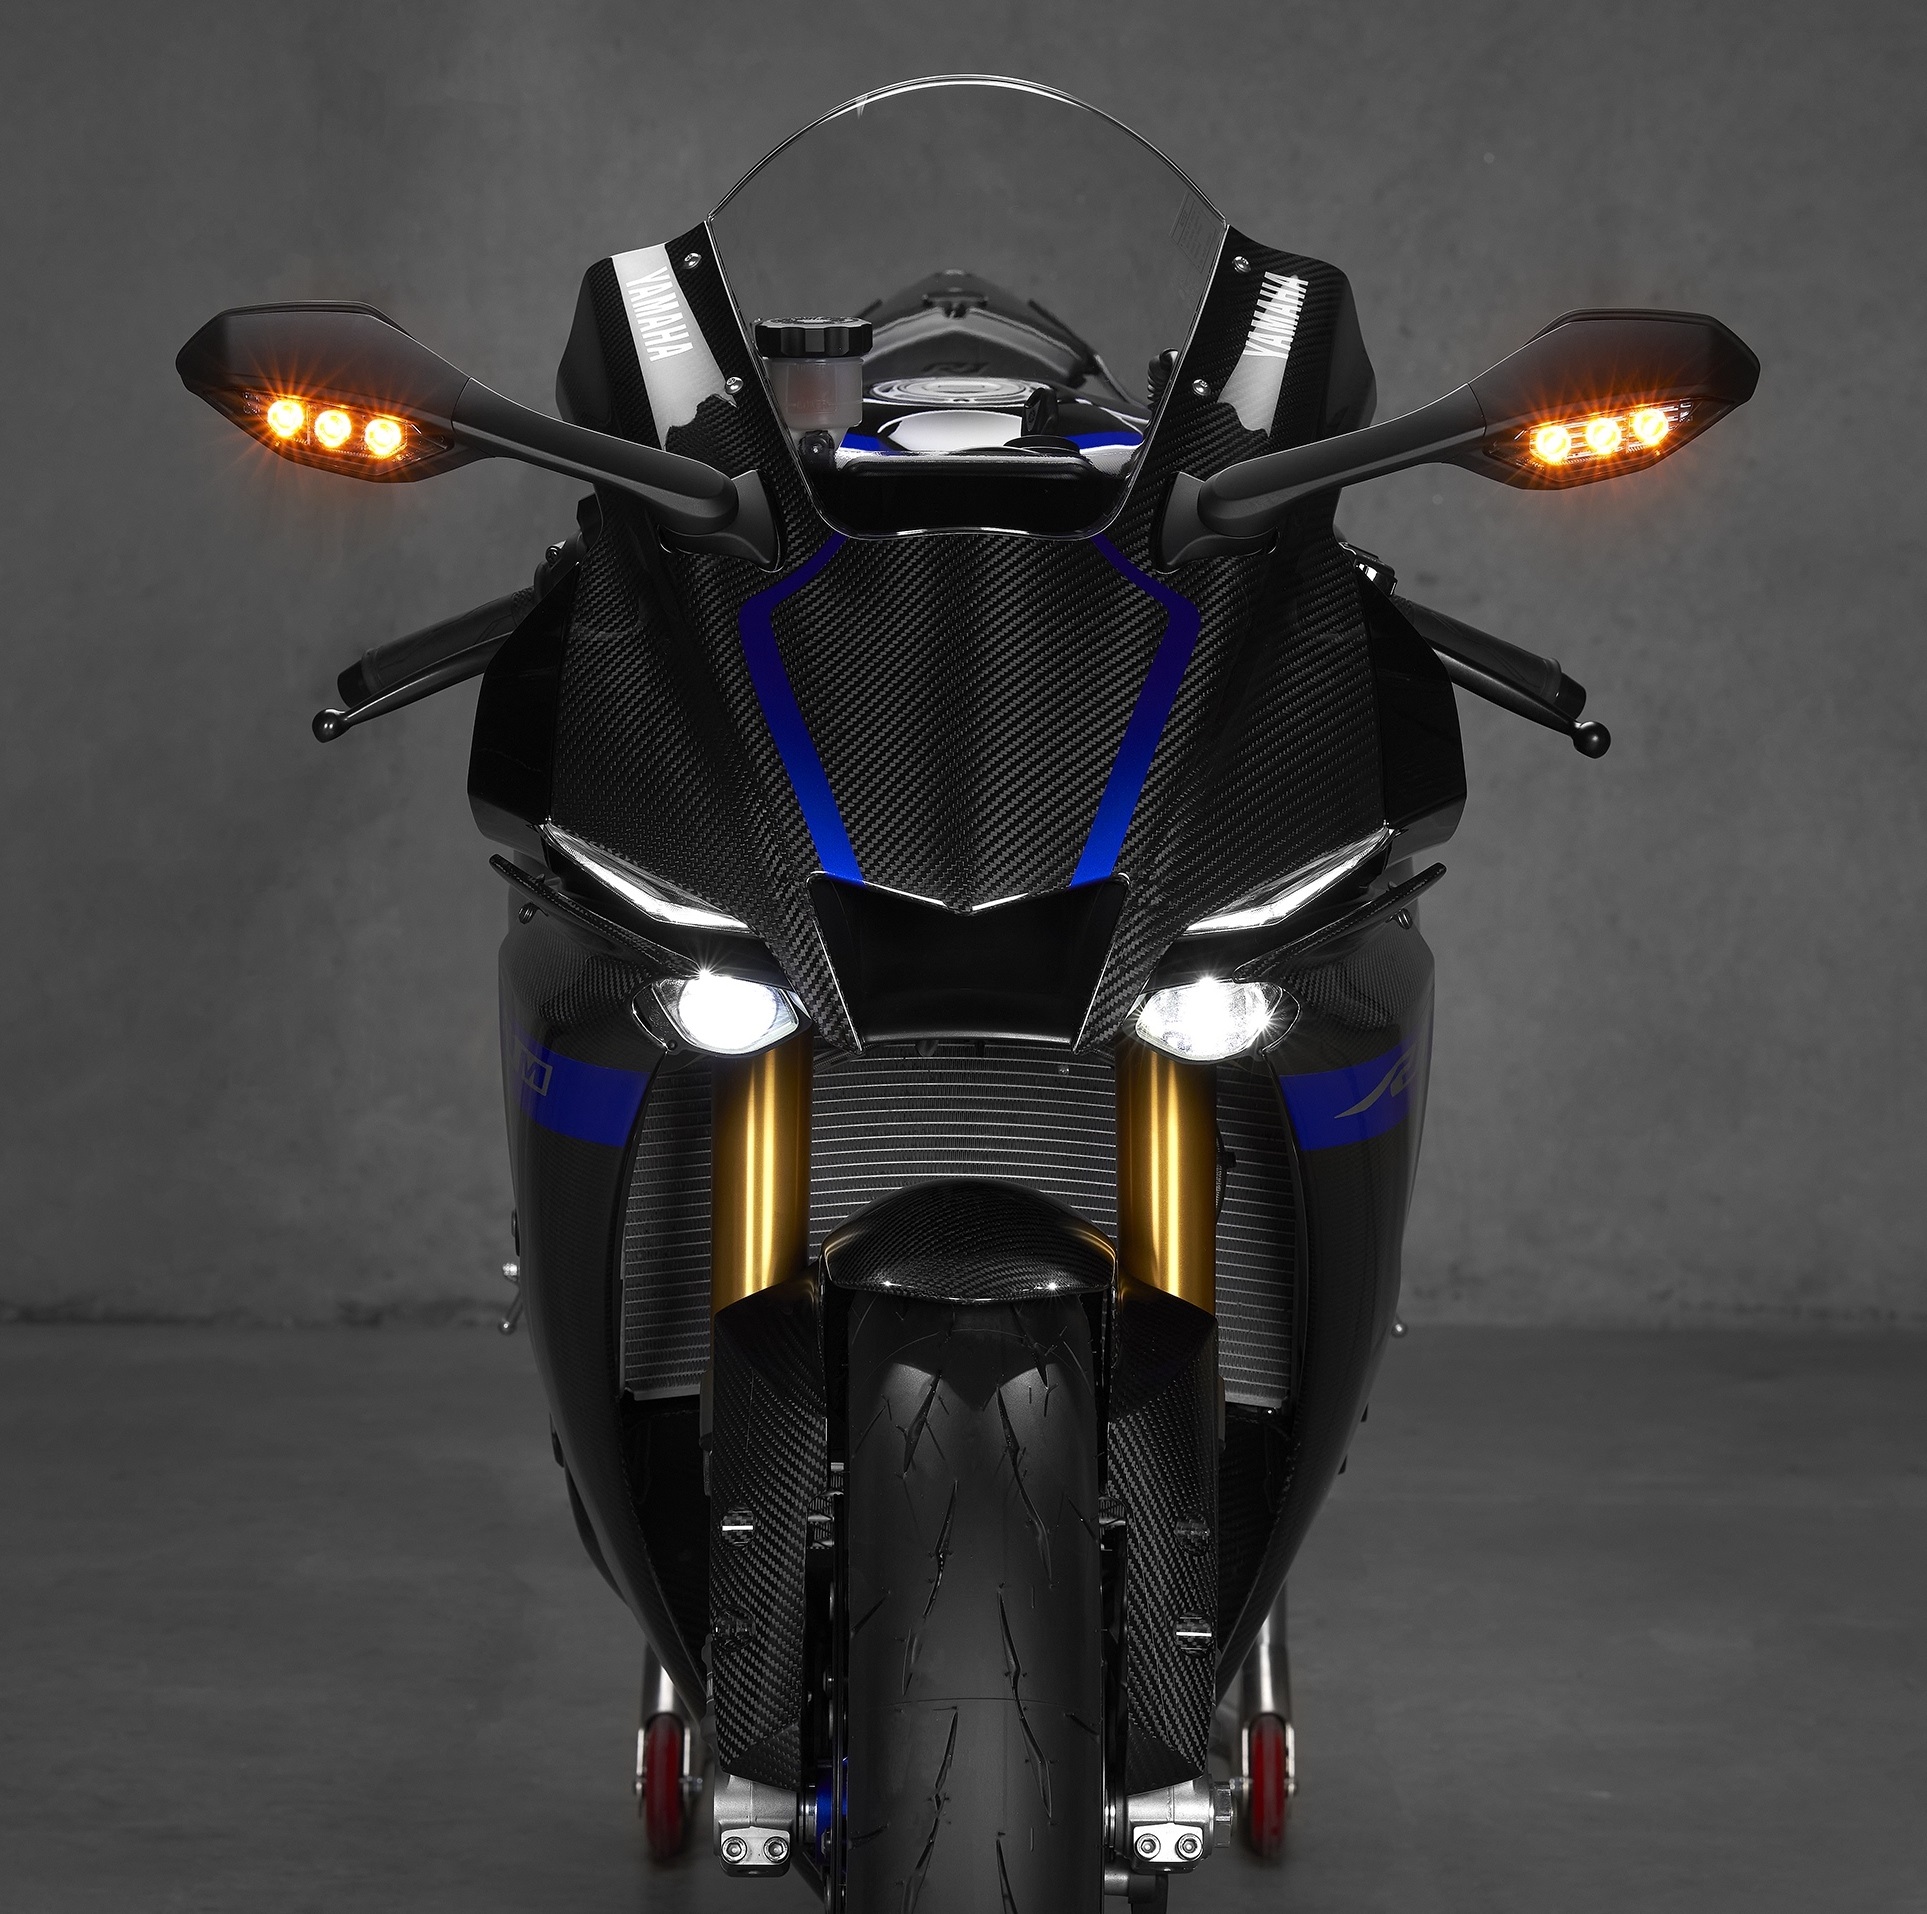 Yamaha giới thiệu YZF-R1 2015 và bản chạy track R1M